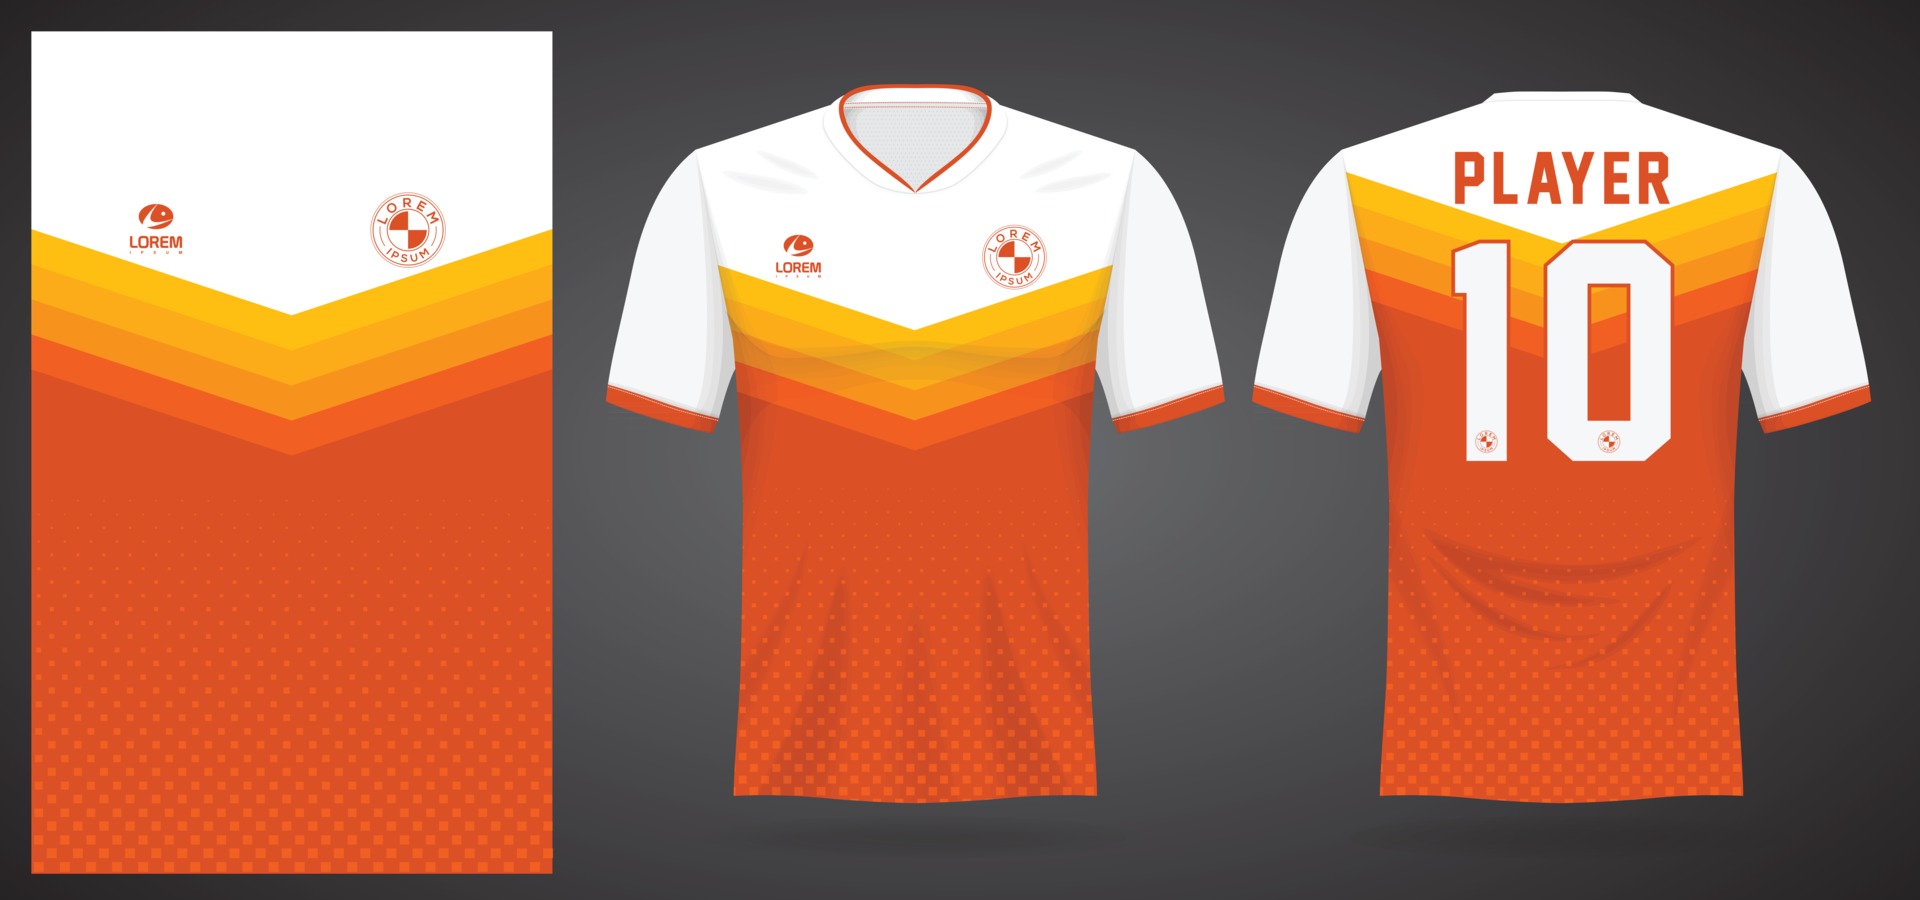 Plantilla de camiseta deportiva para uniformes de equipos y diseño